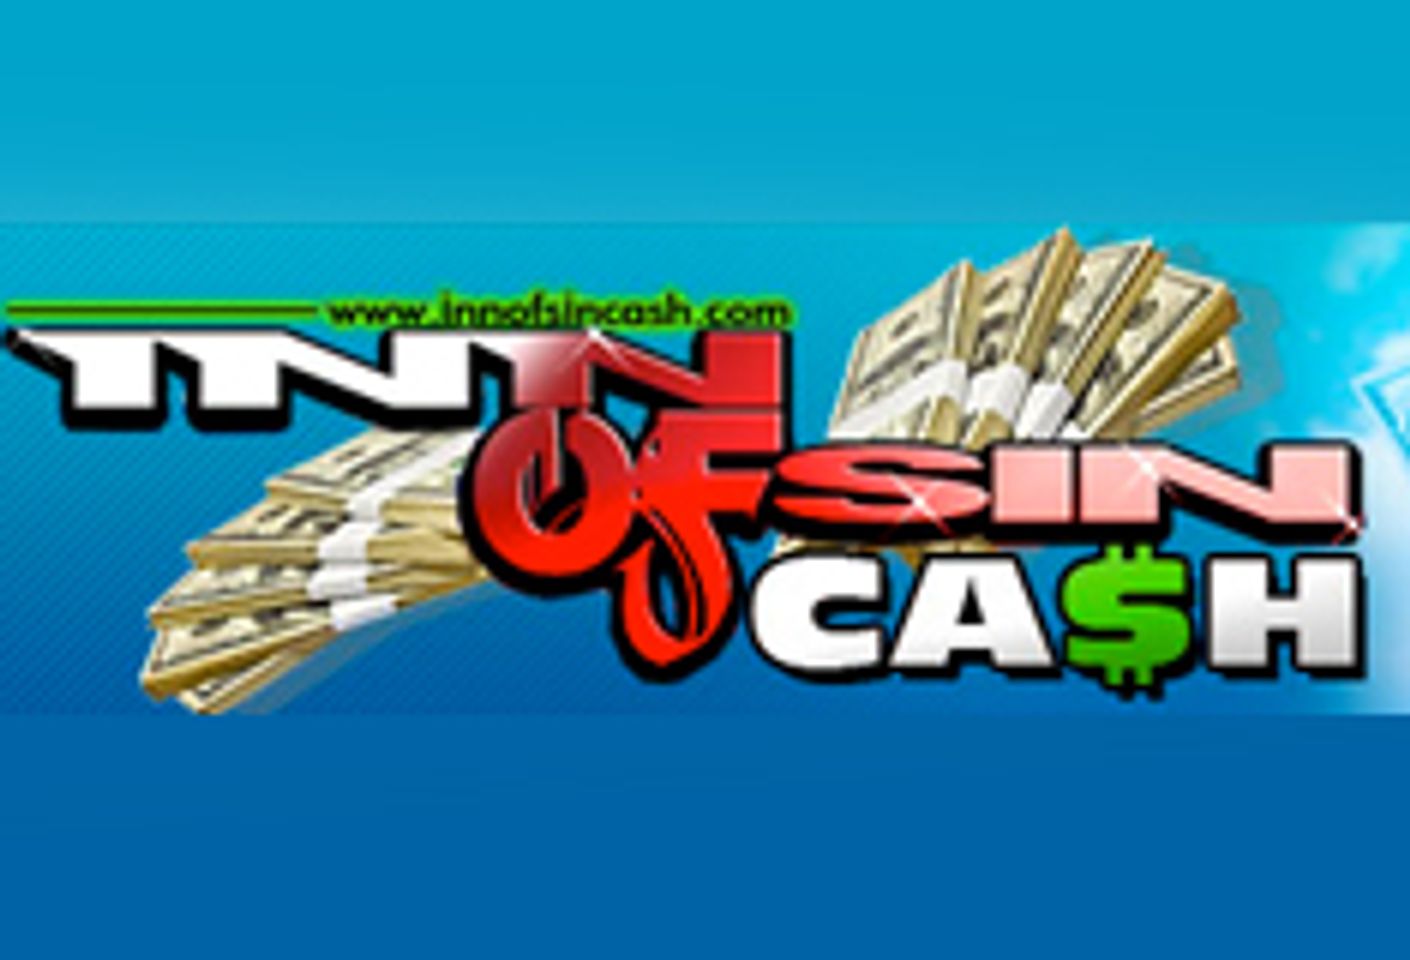 Inn Of Sin Cash Launches Danny Ocean’s Adventures